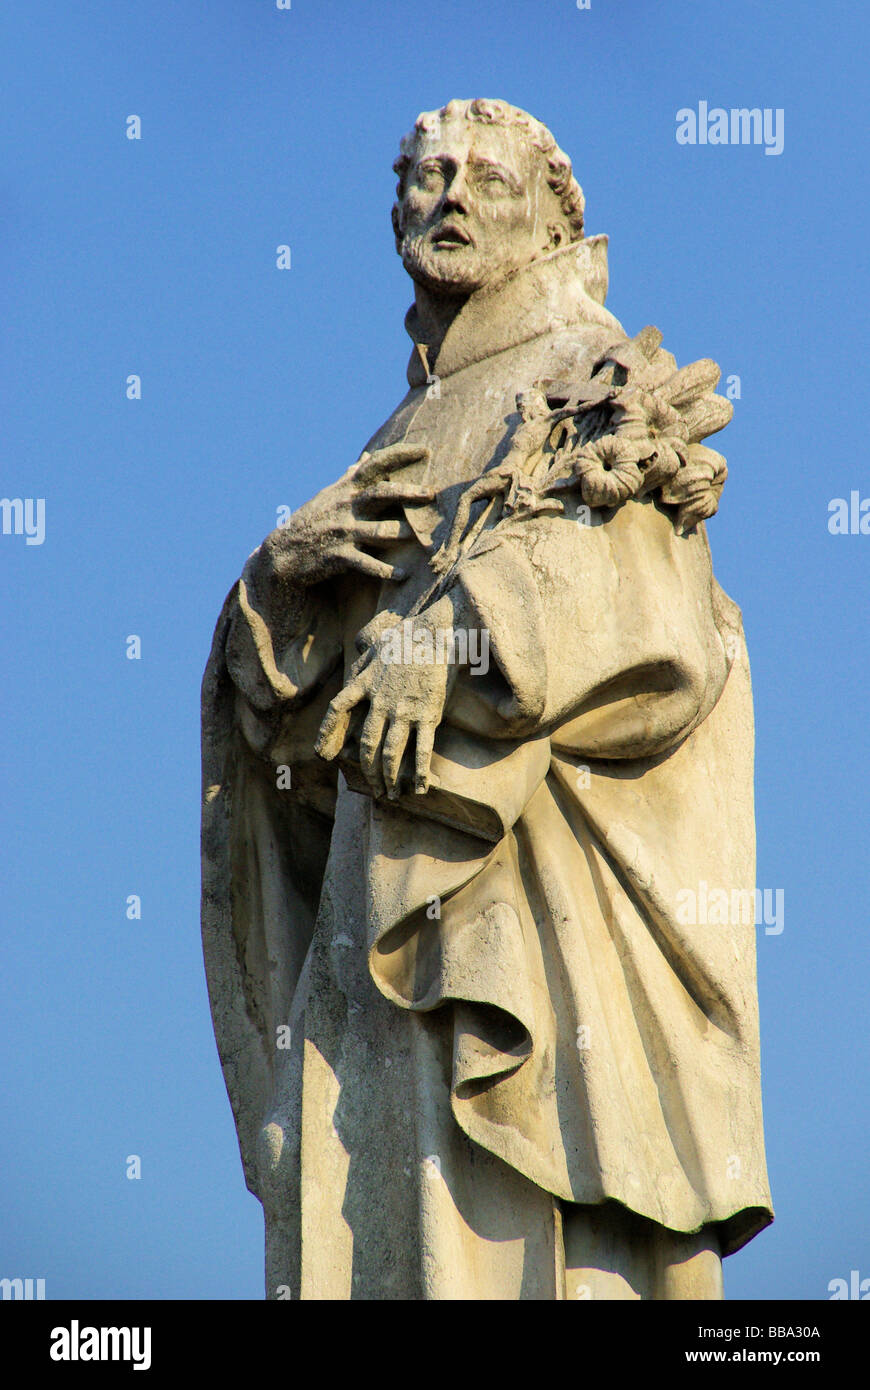 Karlsbrücke estatua Charles Bridge estatua 01 Foto de stock